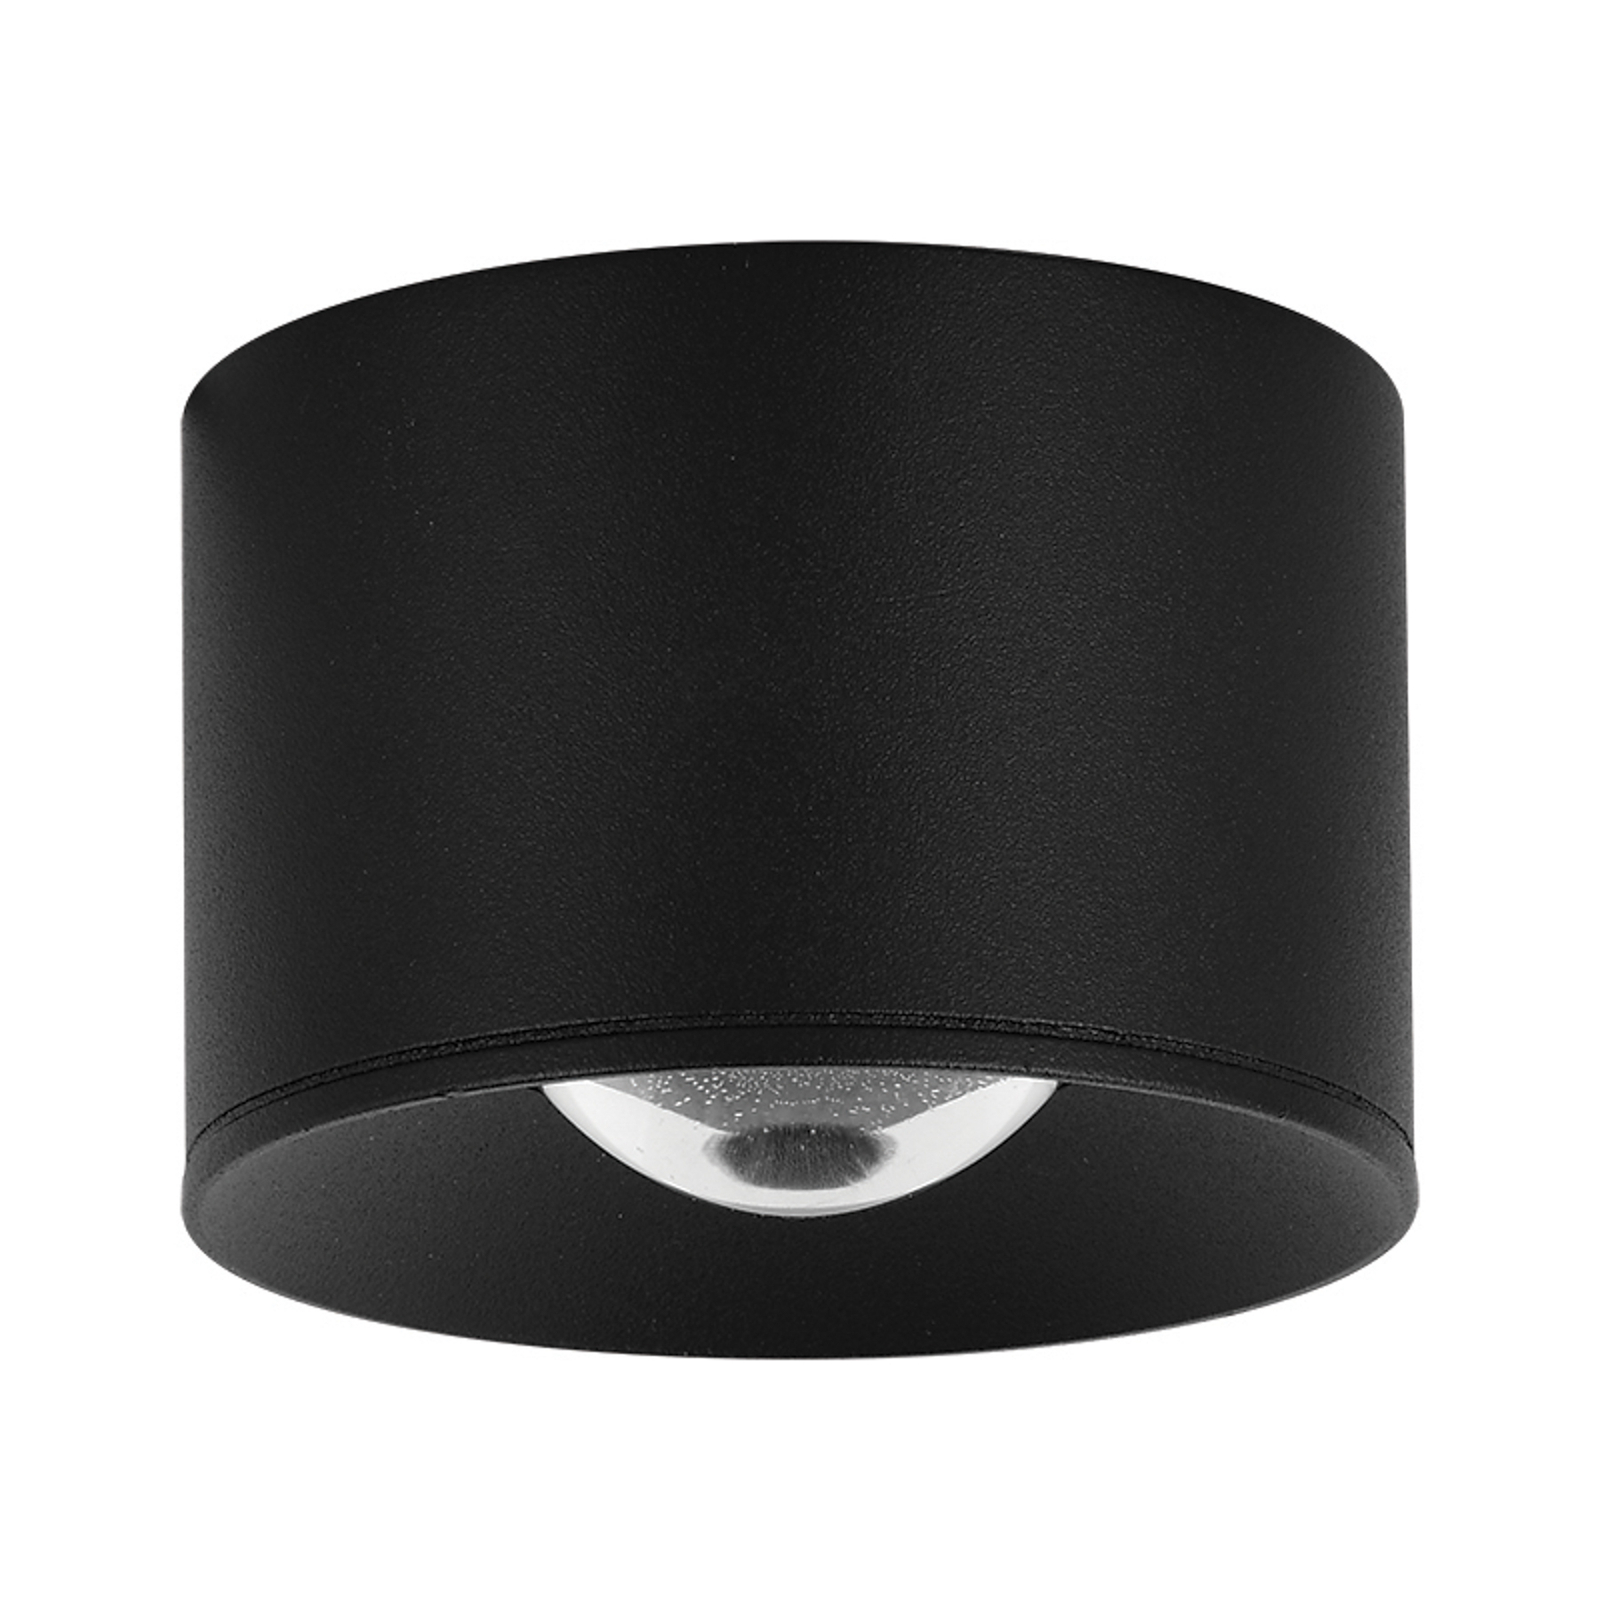 LED spot pour plafond LED S131, Ø 8 cm, noir sable